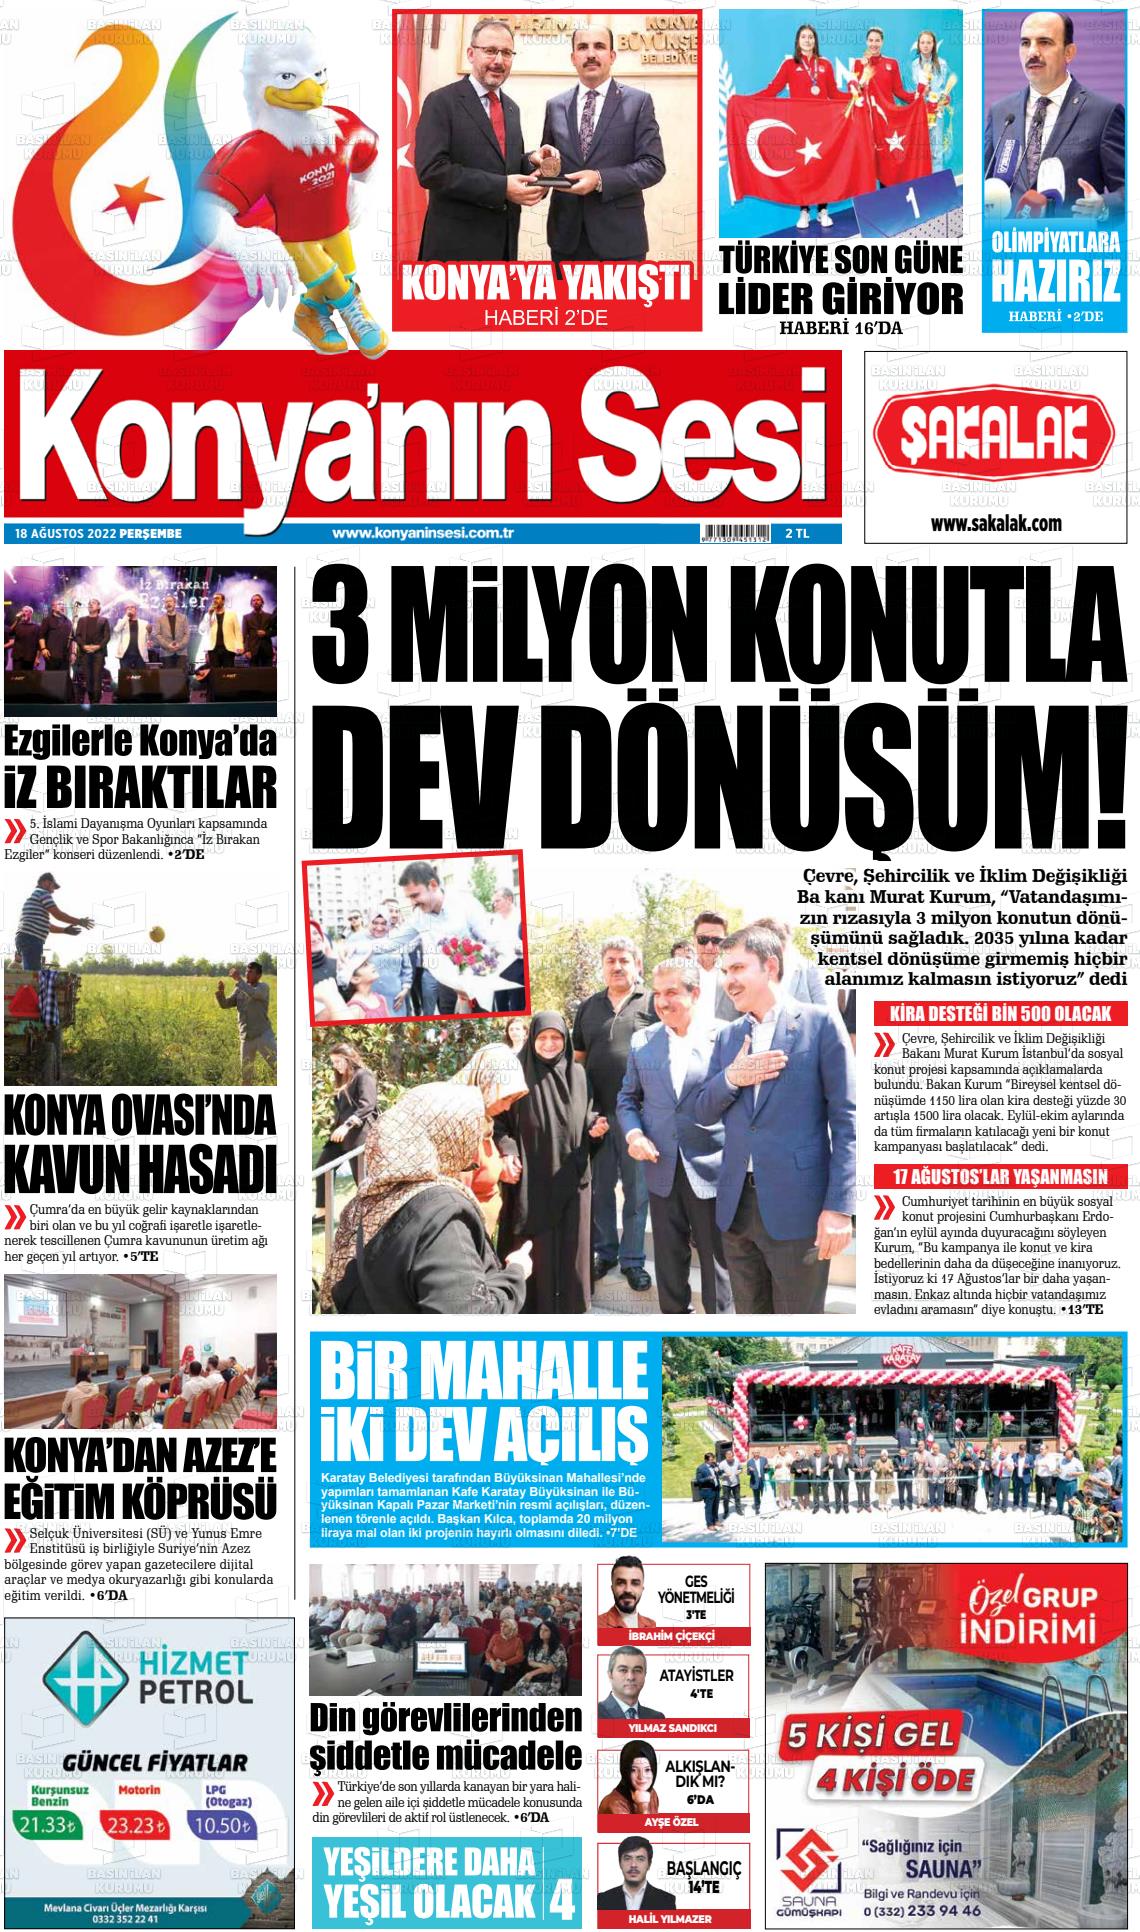 18 Ağustos 2022 Konyanin Sesi Gazete Manşeti